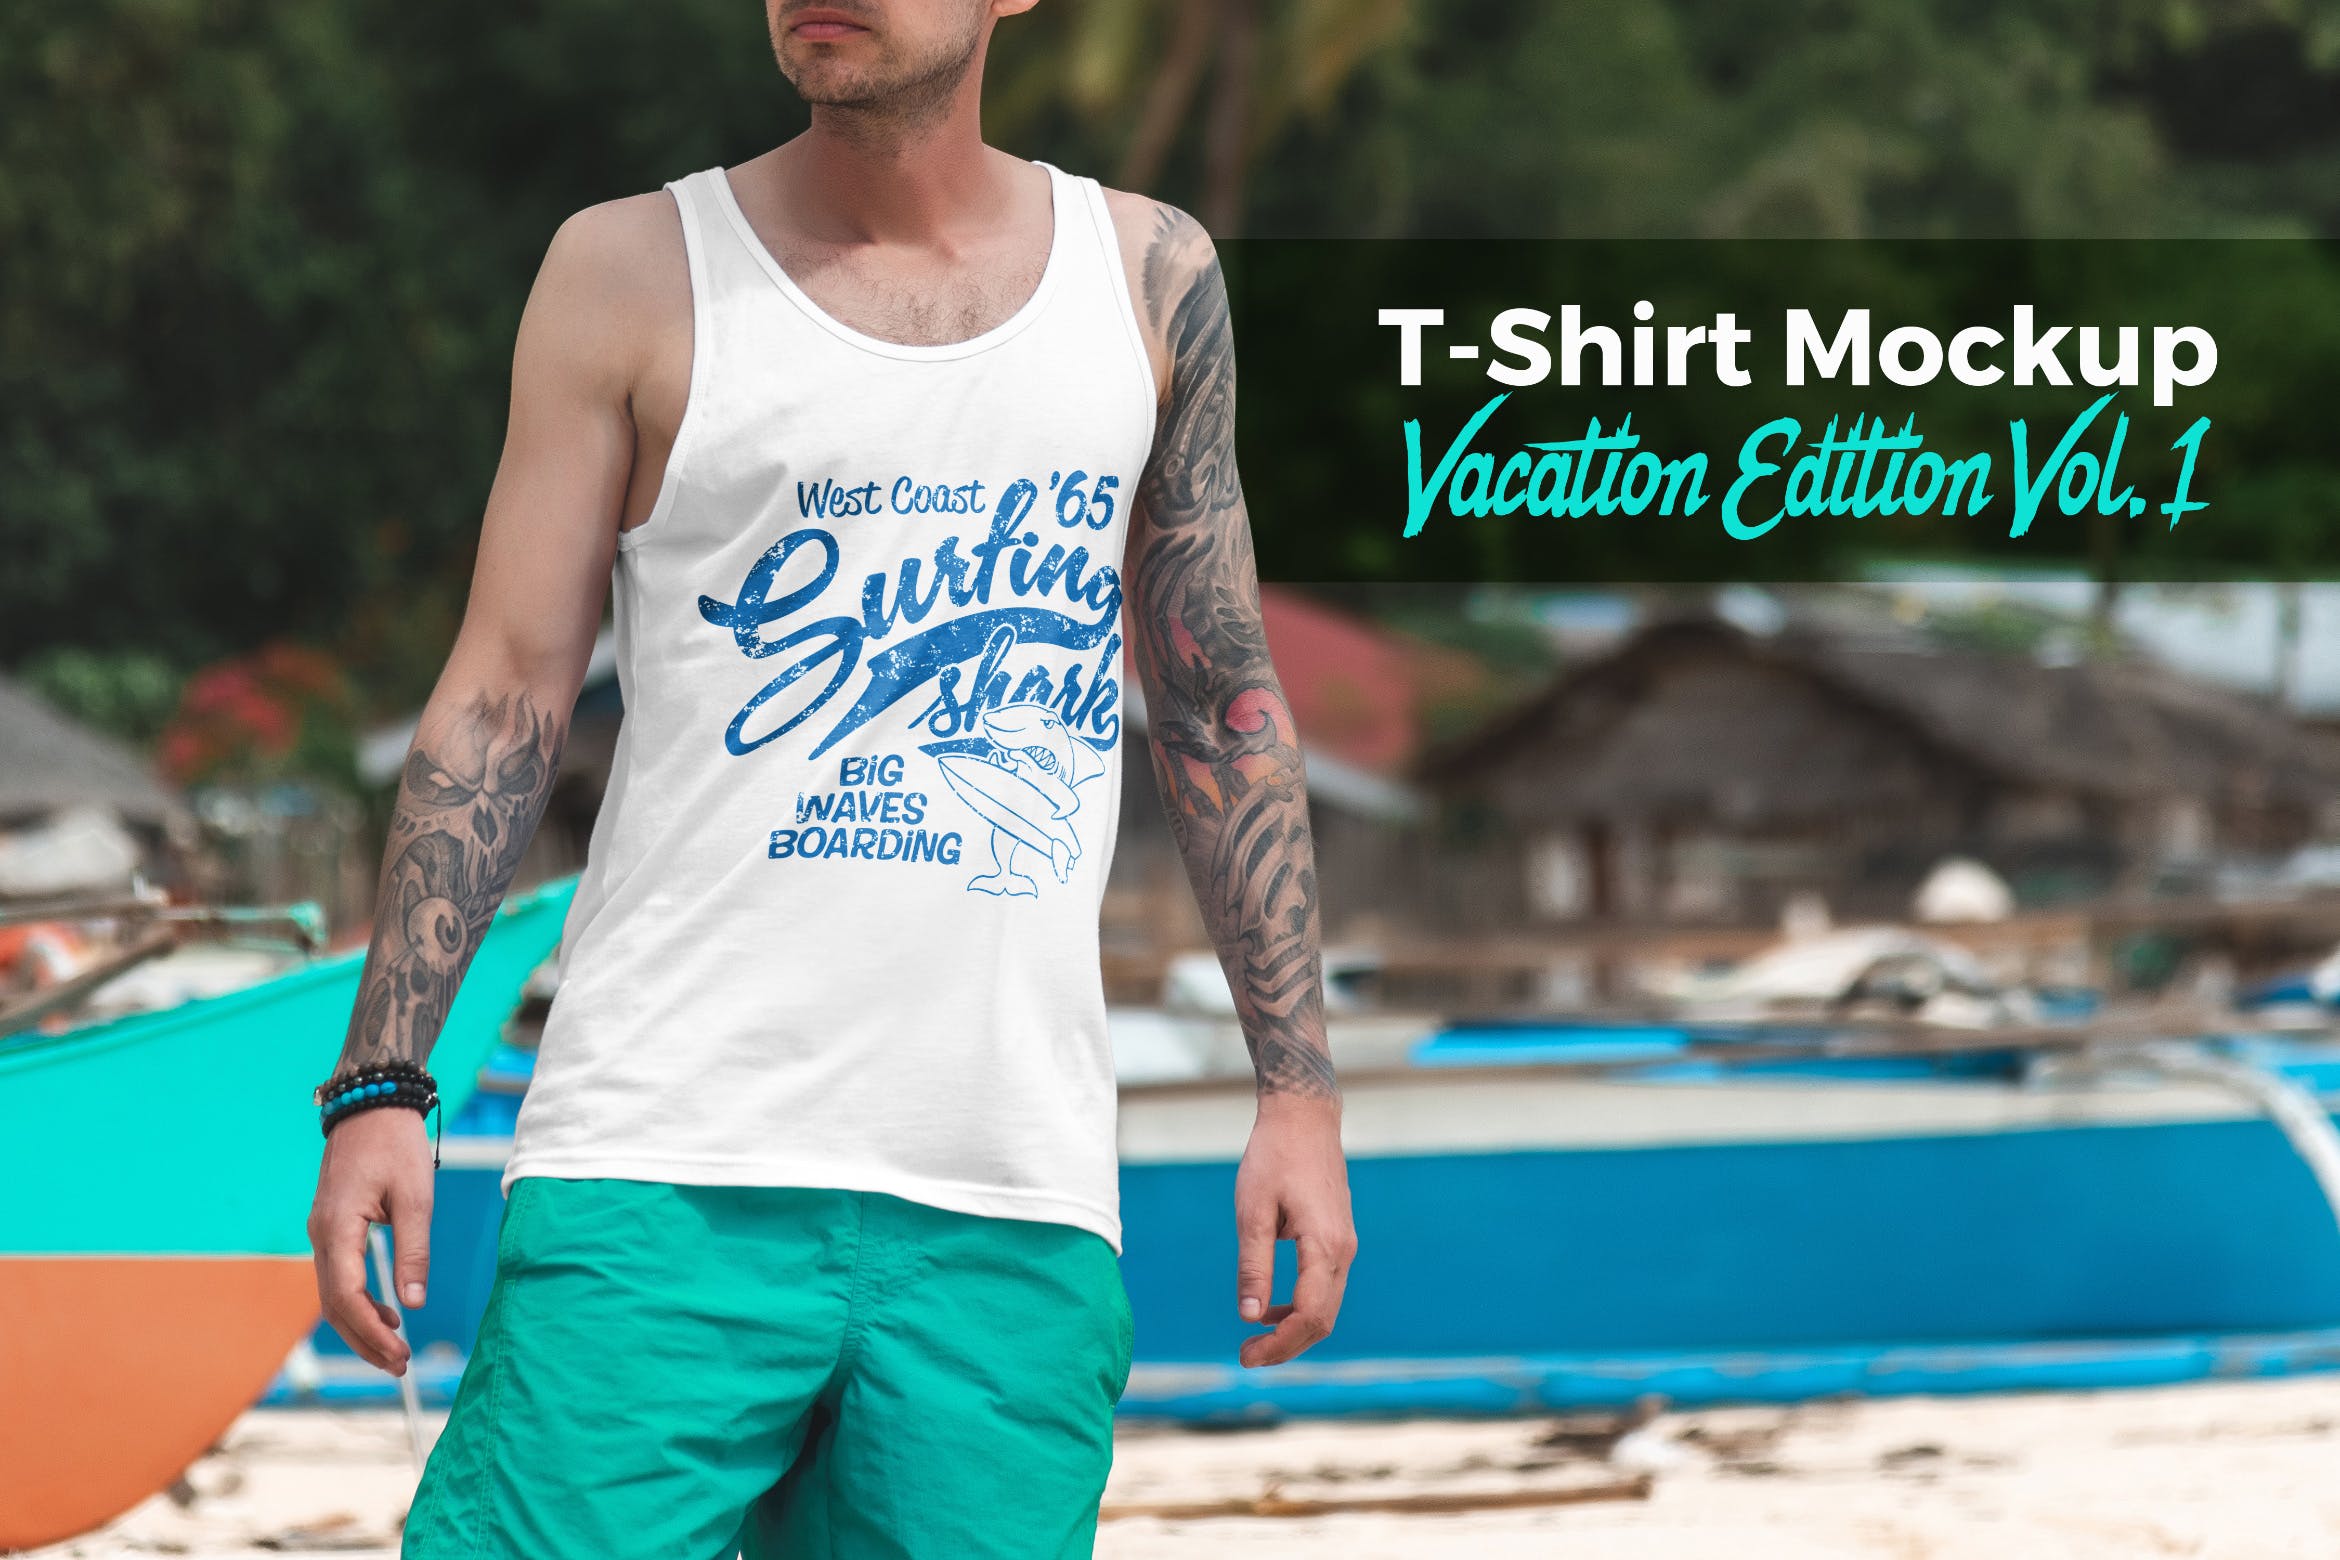 度假系列-休闲服装印花图案设计展示样机大洋岛精选v1 T-Shirt Mockup Vacation Edition Vol. 1插图